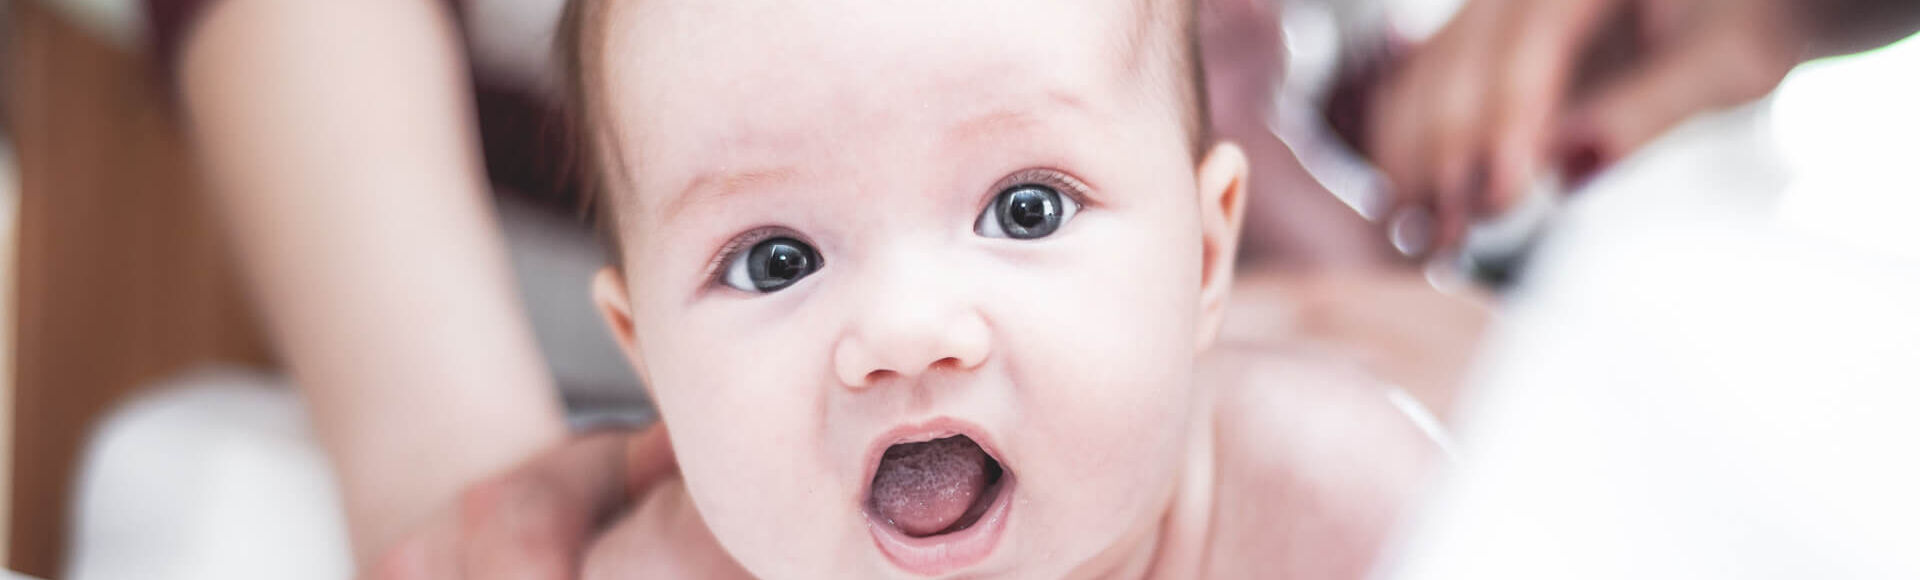 A icterícia no bebê é normal?